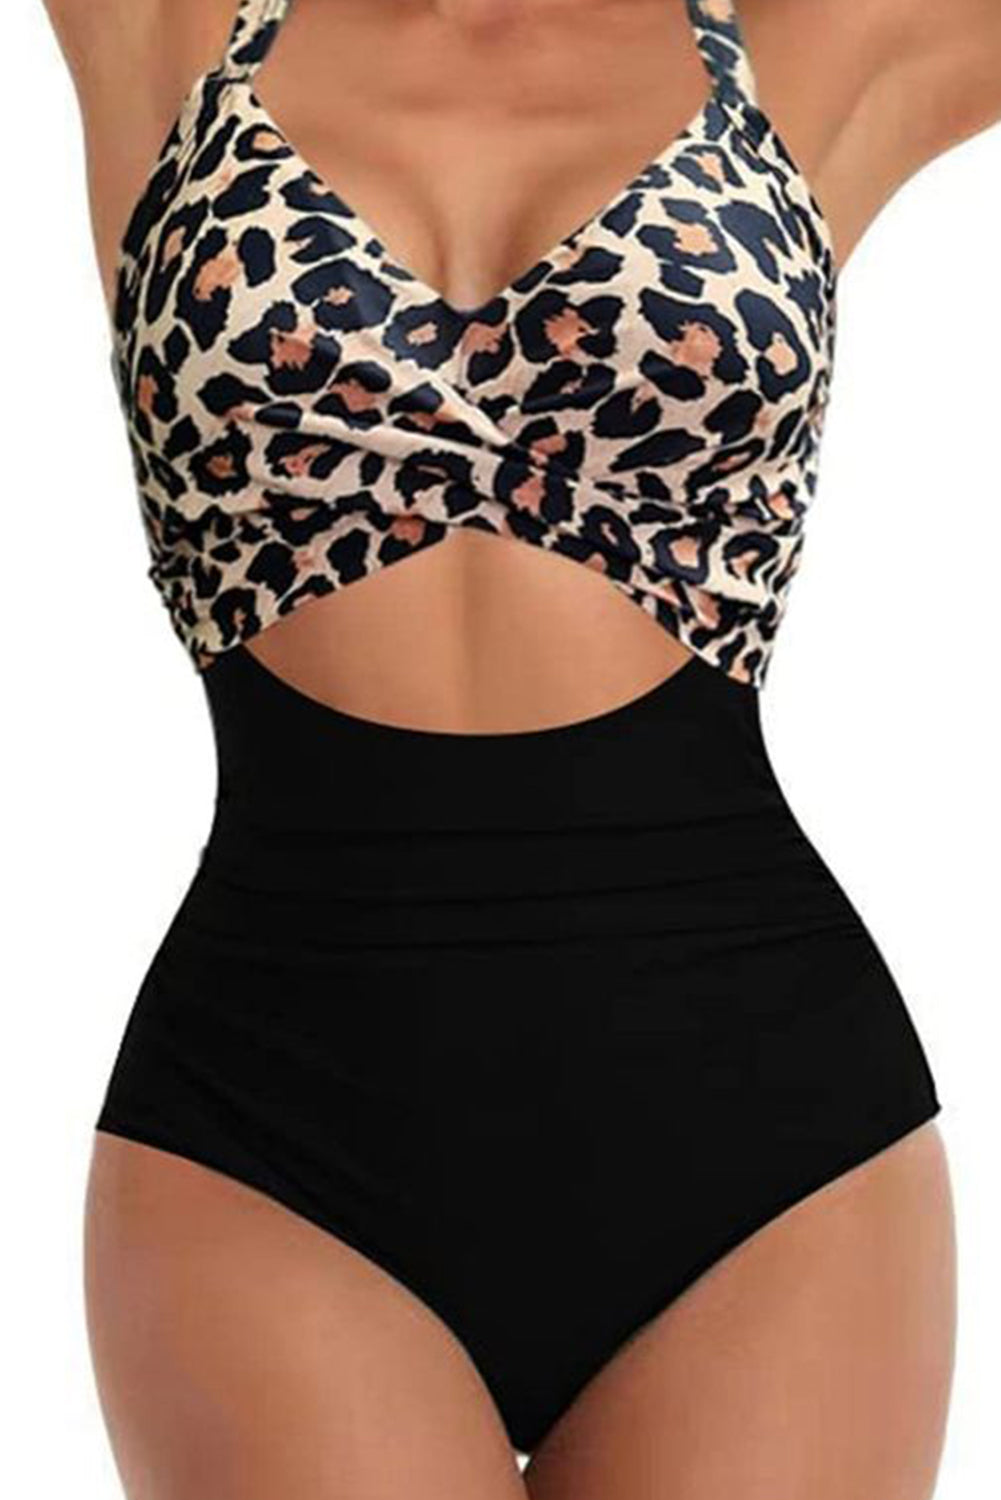 Monokini senza schienale con ritaglio incrociato bicolore leopardo nero